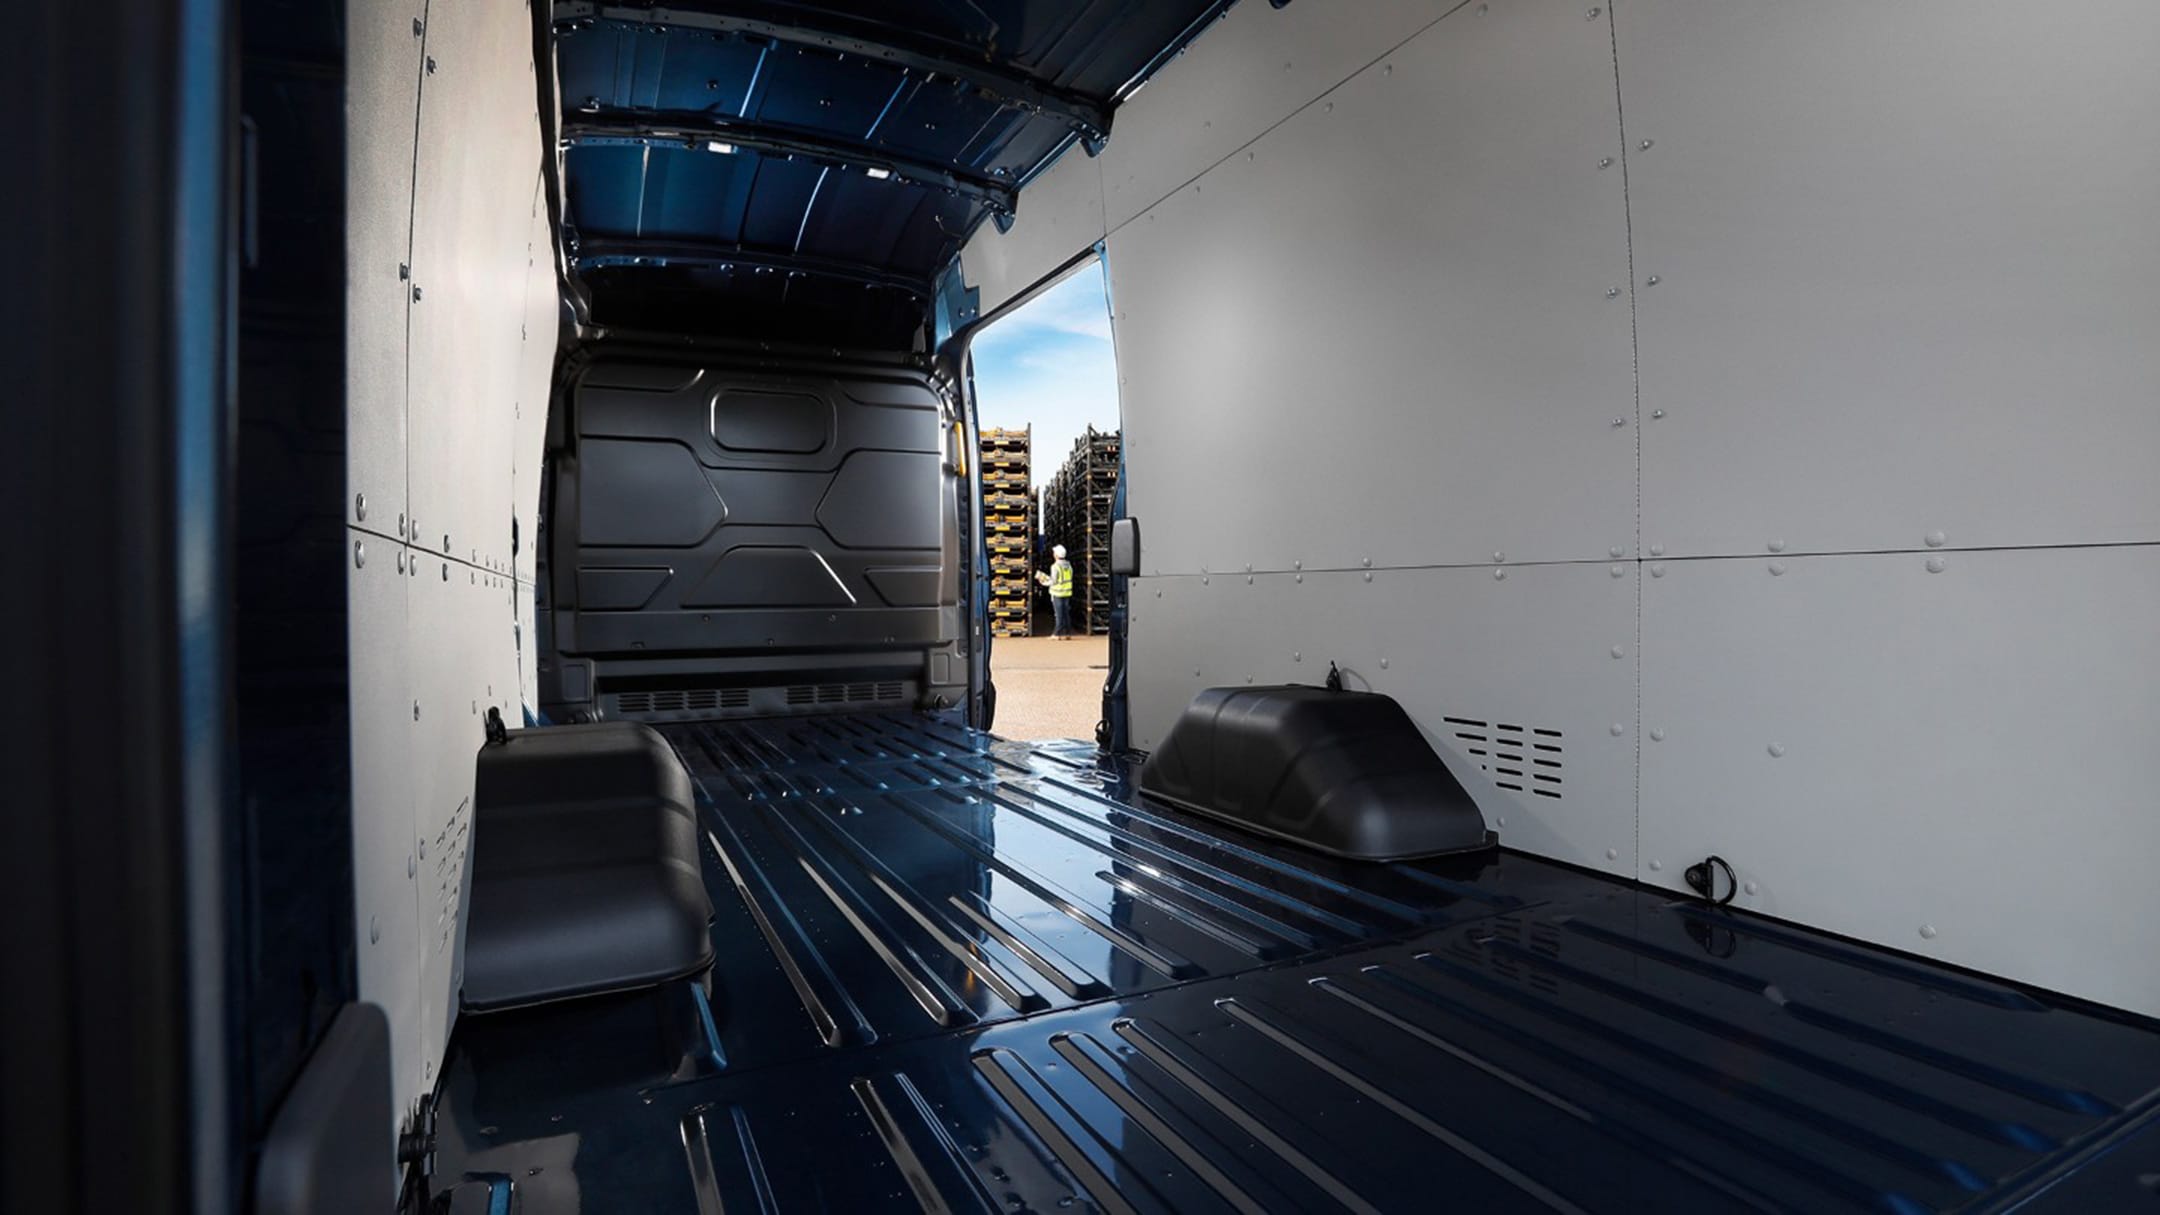 Ford E-Transit Van loadspace view